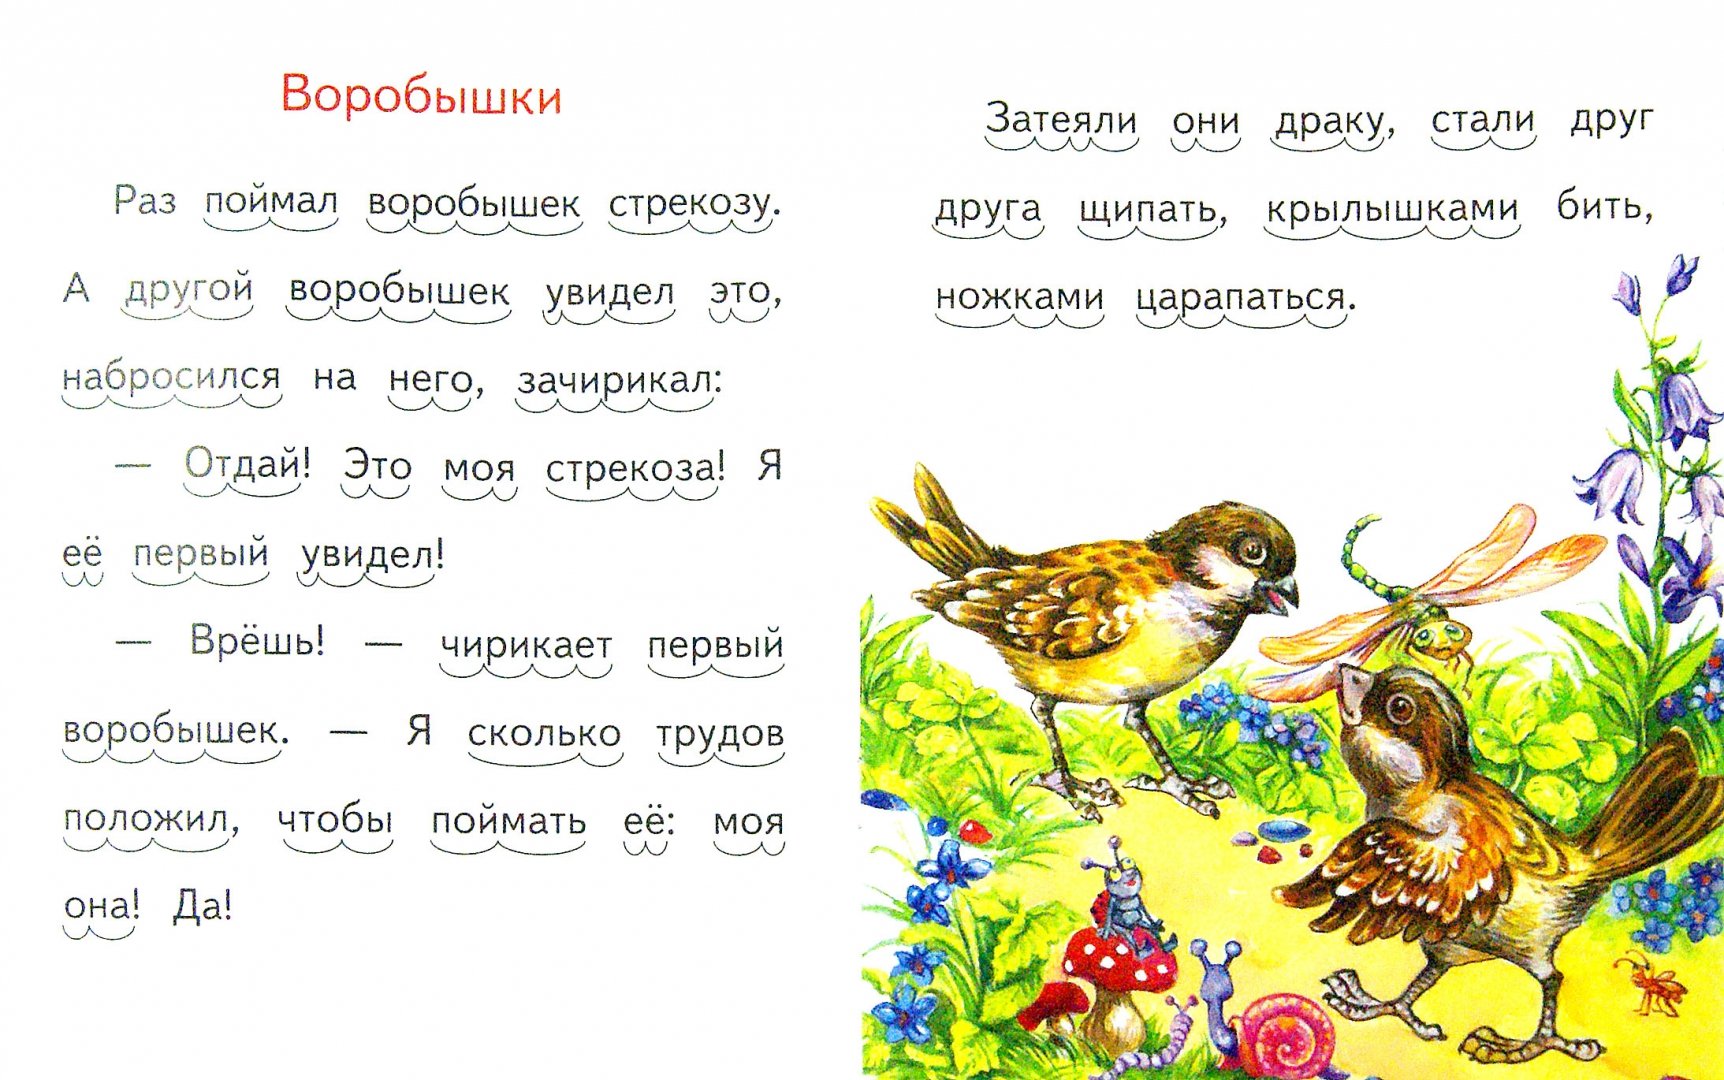 Иллюстрация 1 из 12 для Находчивая мышка - Александр Федоров-Давыдов | Лабиринт - книги. Источник: Лабиринт